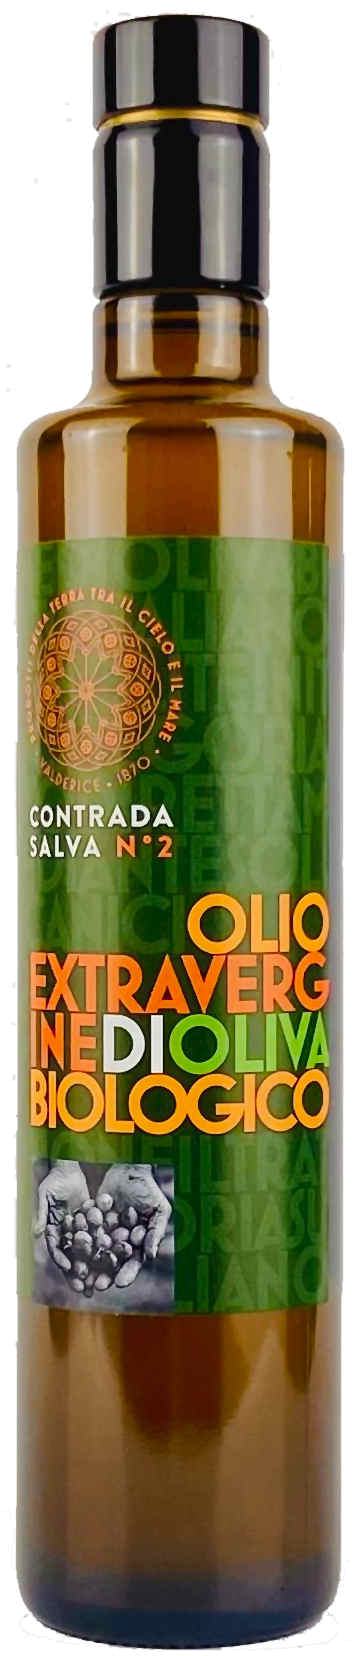 Contrada N° 2 Olio Extravergine di Oliva Biologico 0,5L